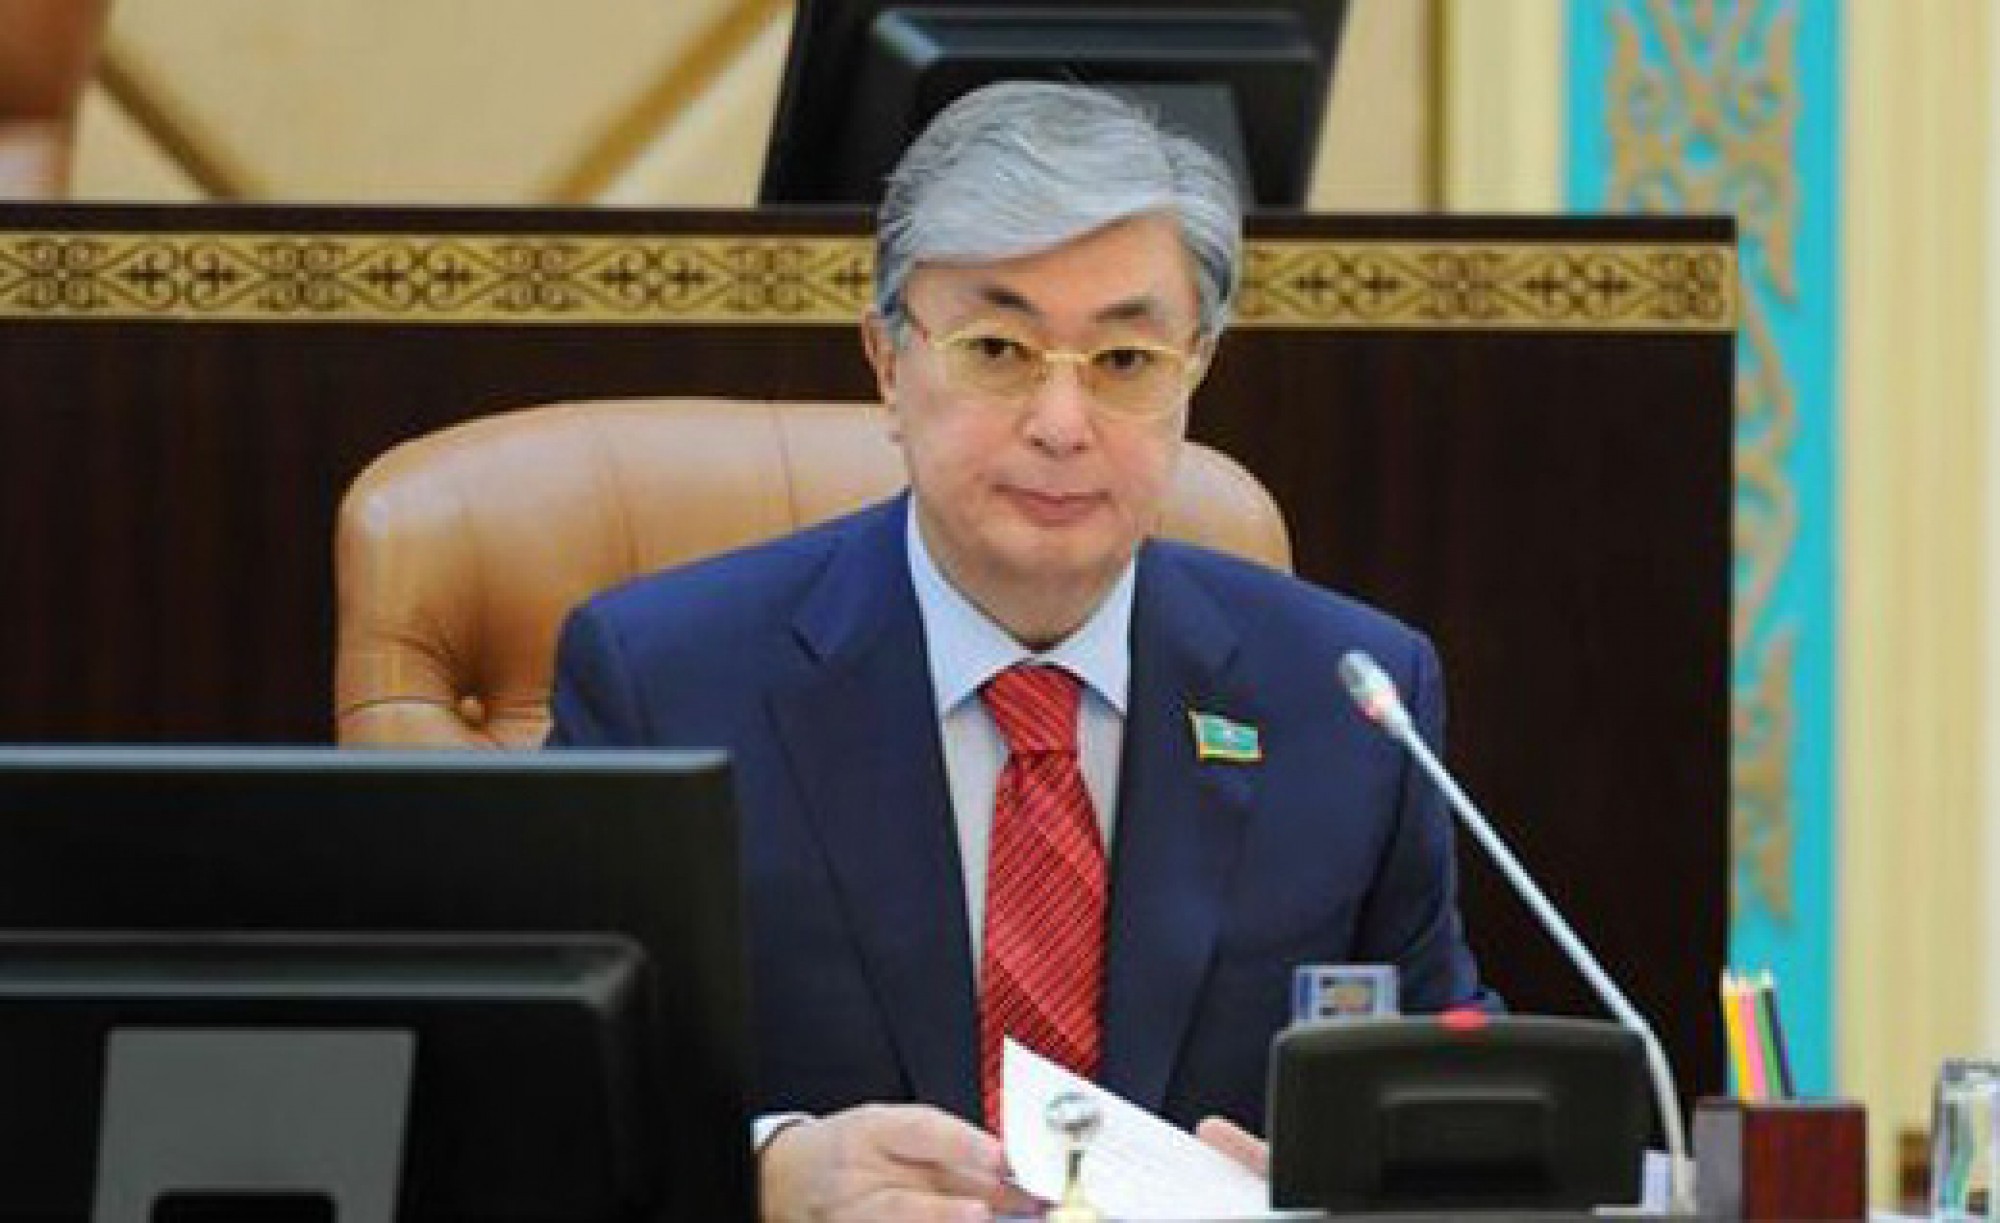 Проблему дефицита ГСМ Правительство должно решить системно - Токаев